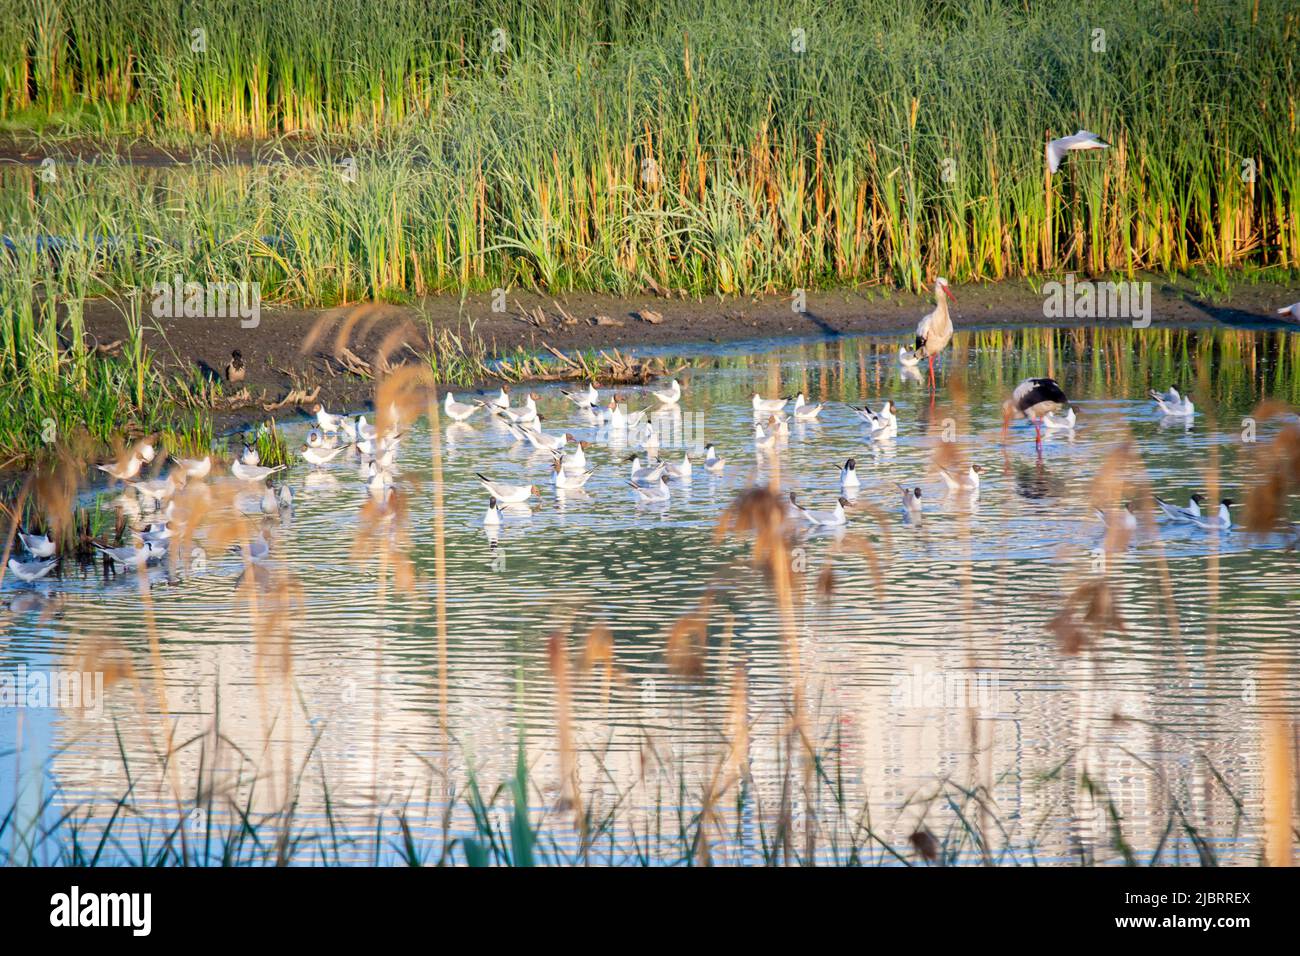 Molti uccelli cicogne e gabbiani sulla riva del lago vicino a canne verdi al tramonto all'alba. Un gregge di cicogne si levano in piedi, mangiano, si puliscono in acqua vicino alla riva. Molti gabbiani bianchi nuotano nelle vicinanze in acqua Foto Stock